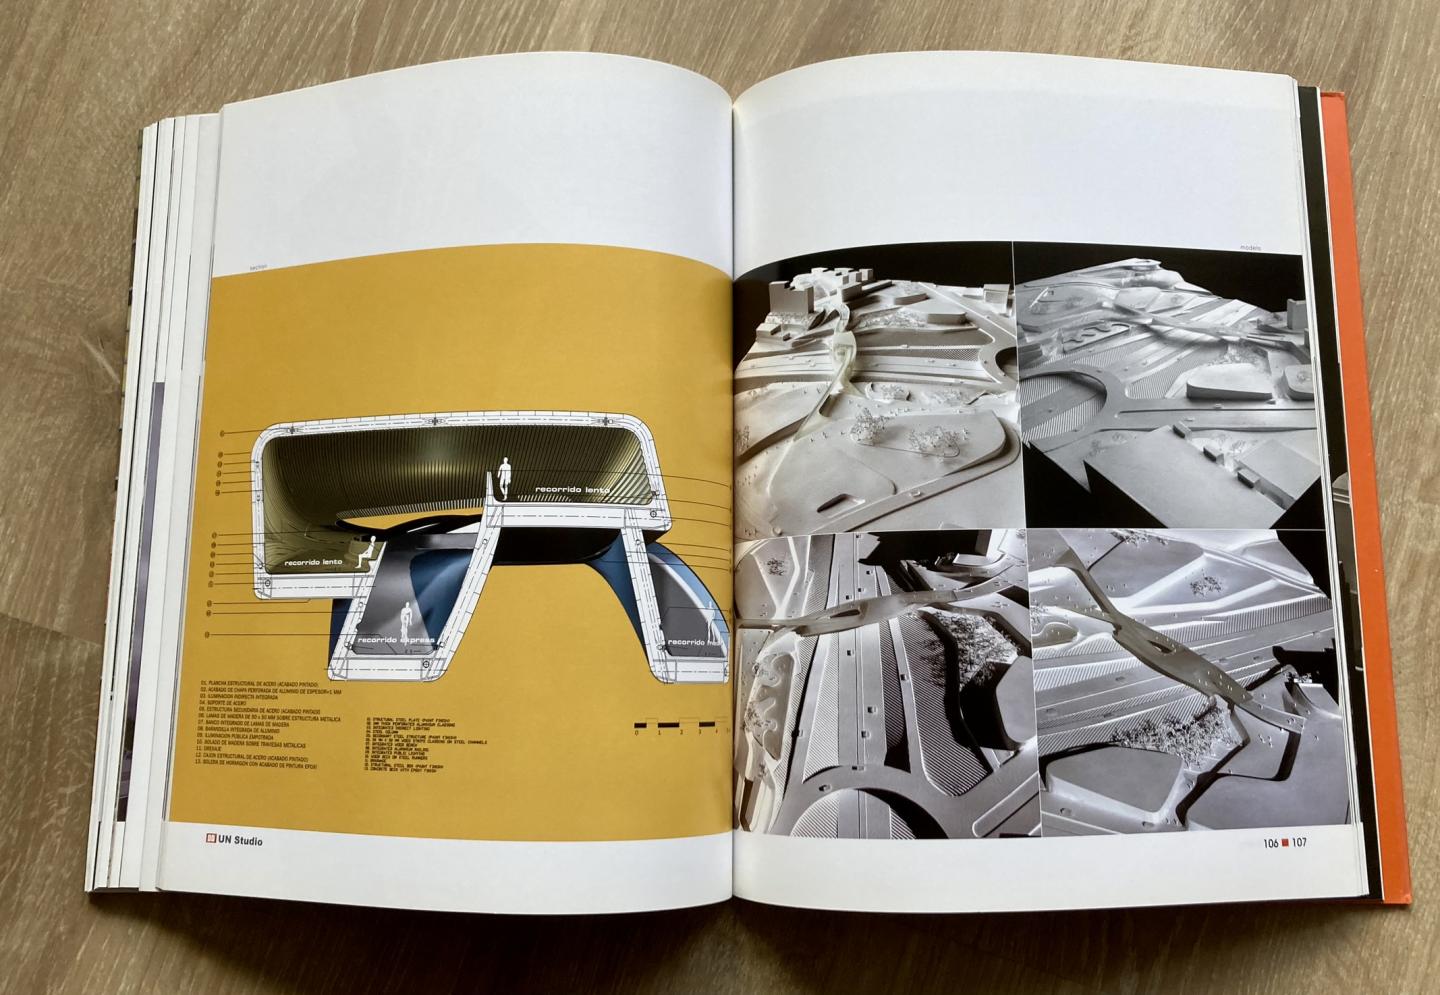 Schumacher , Patrik - Ben Van Berkel (UN Studio) - Love it. Live it. - Design Document S. No. 7